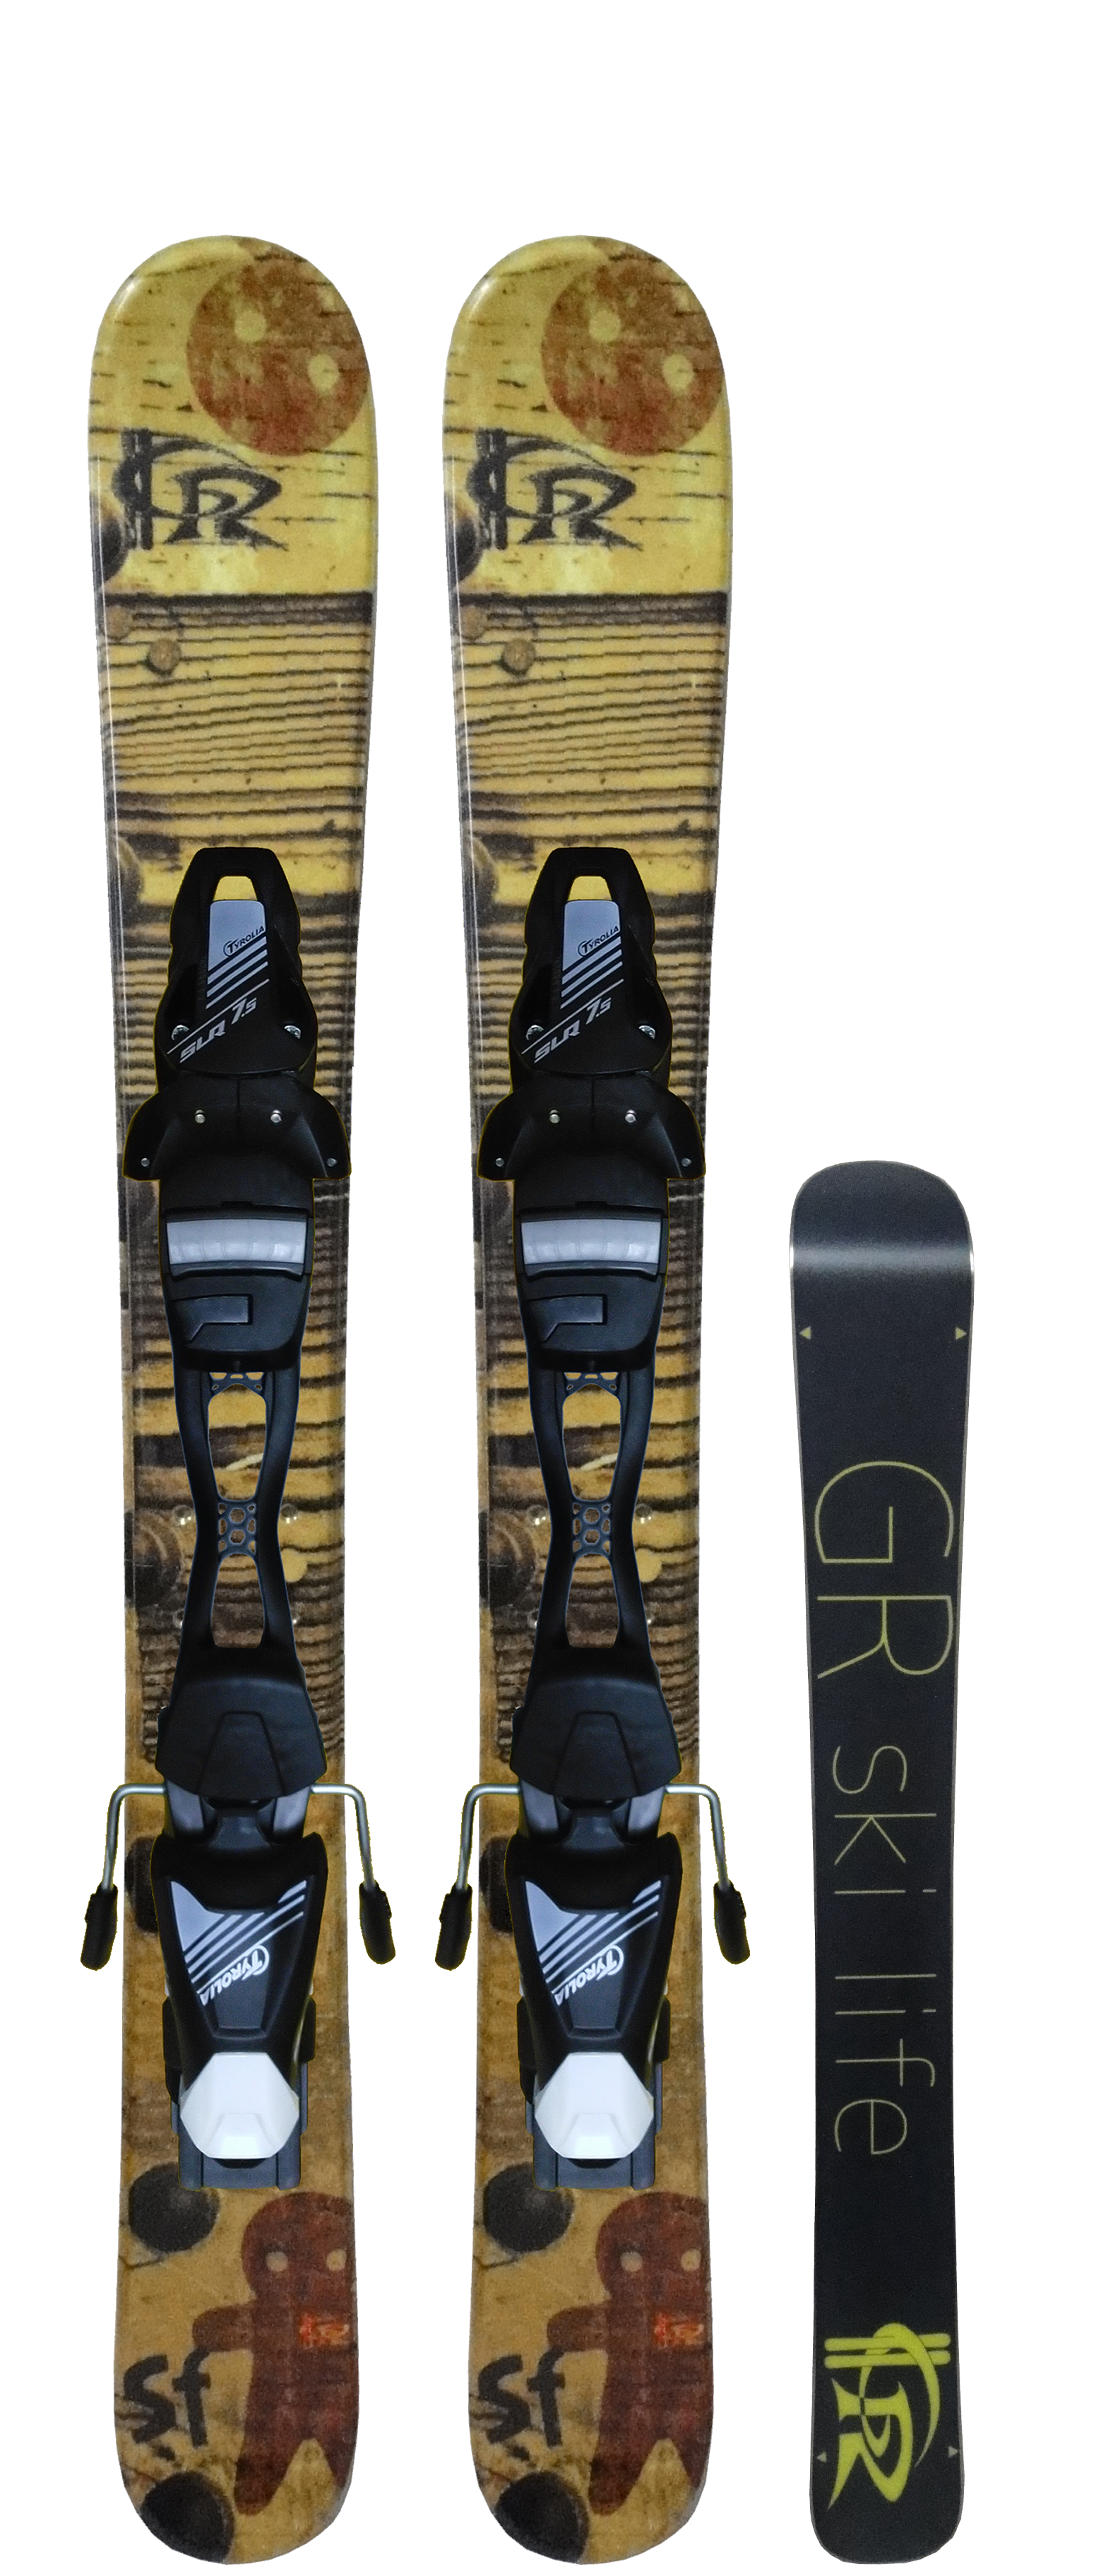 SnowFairy / スノーフェアリー | スキーボード専門ブランド「GR ski life」